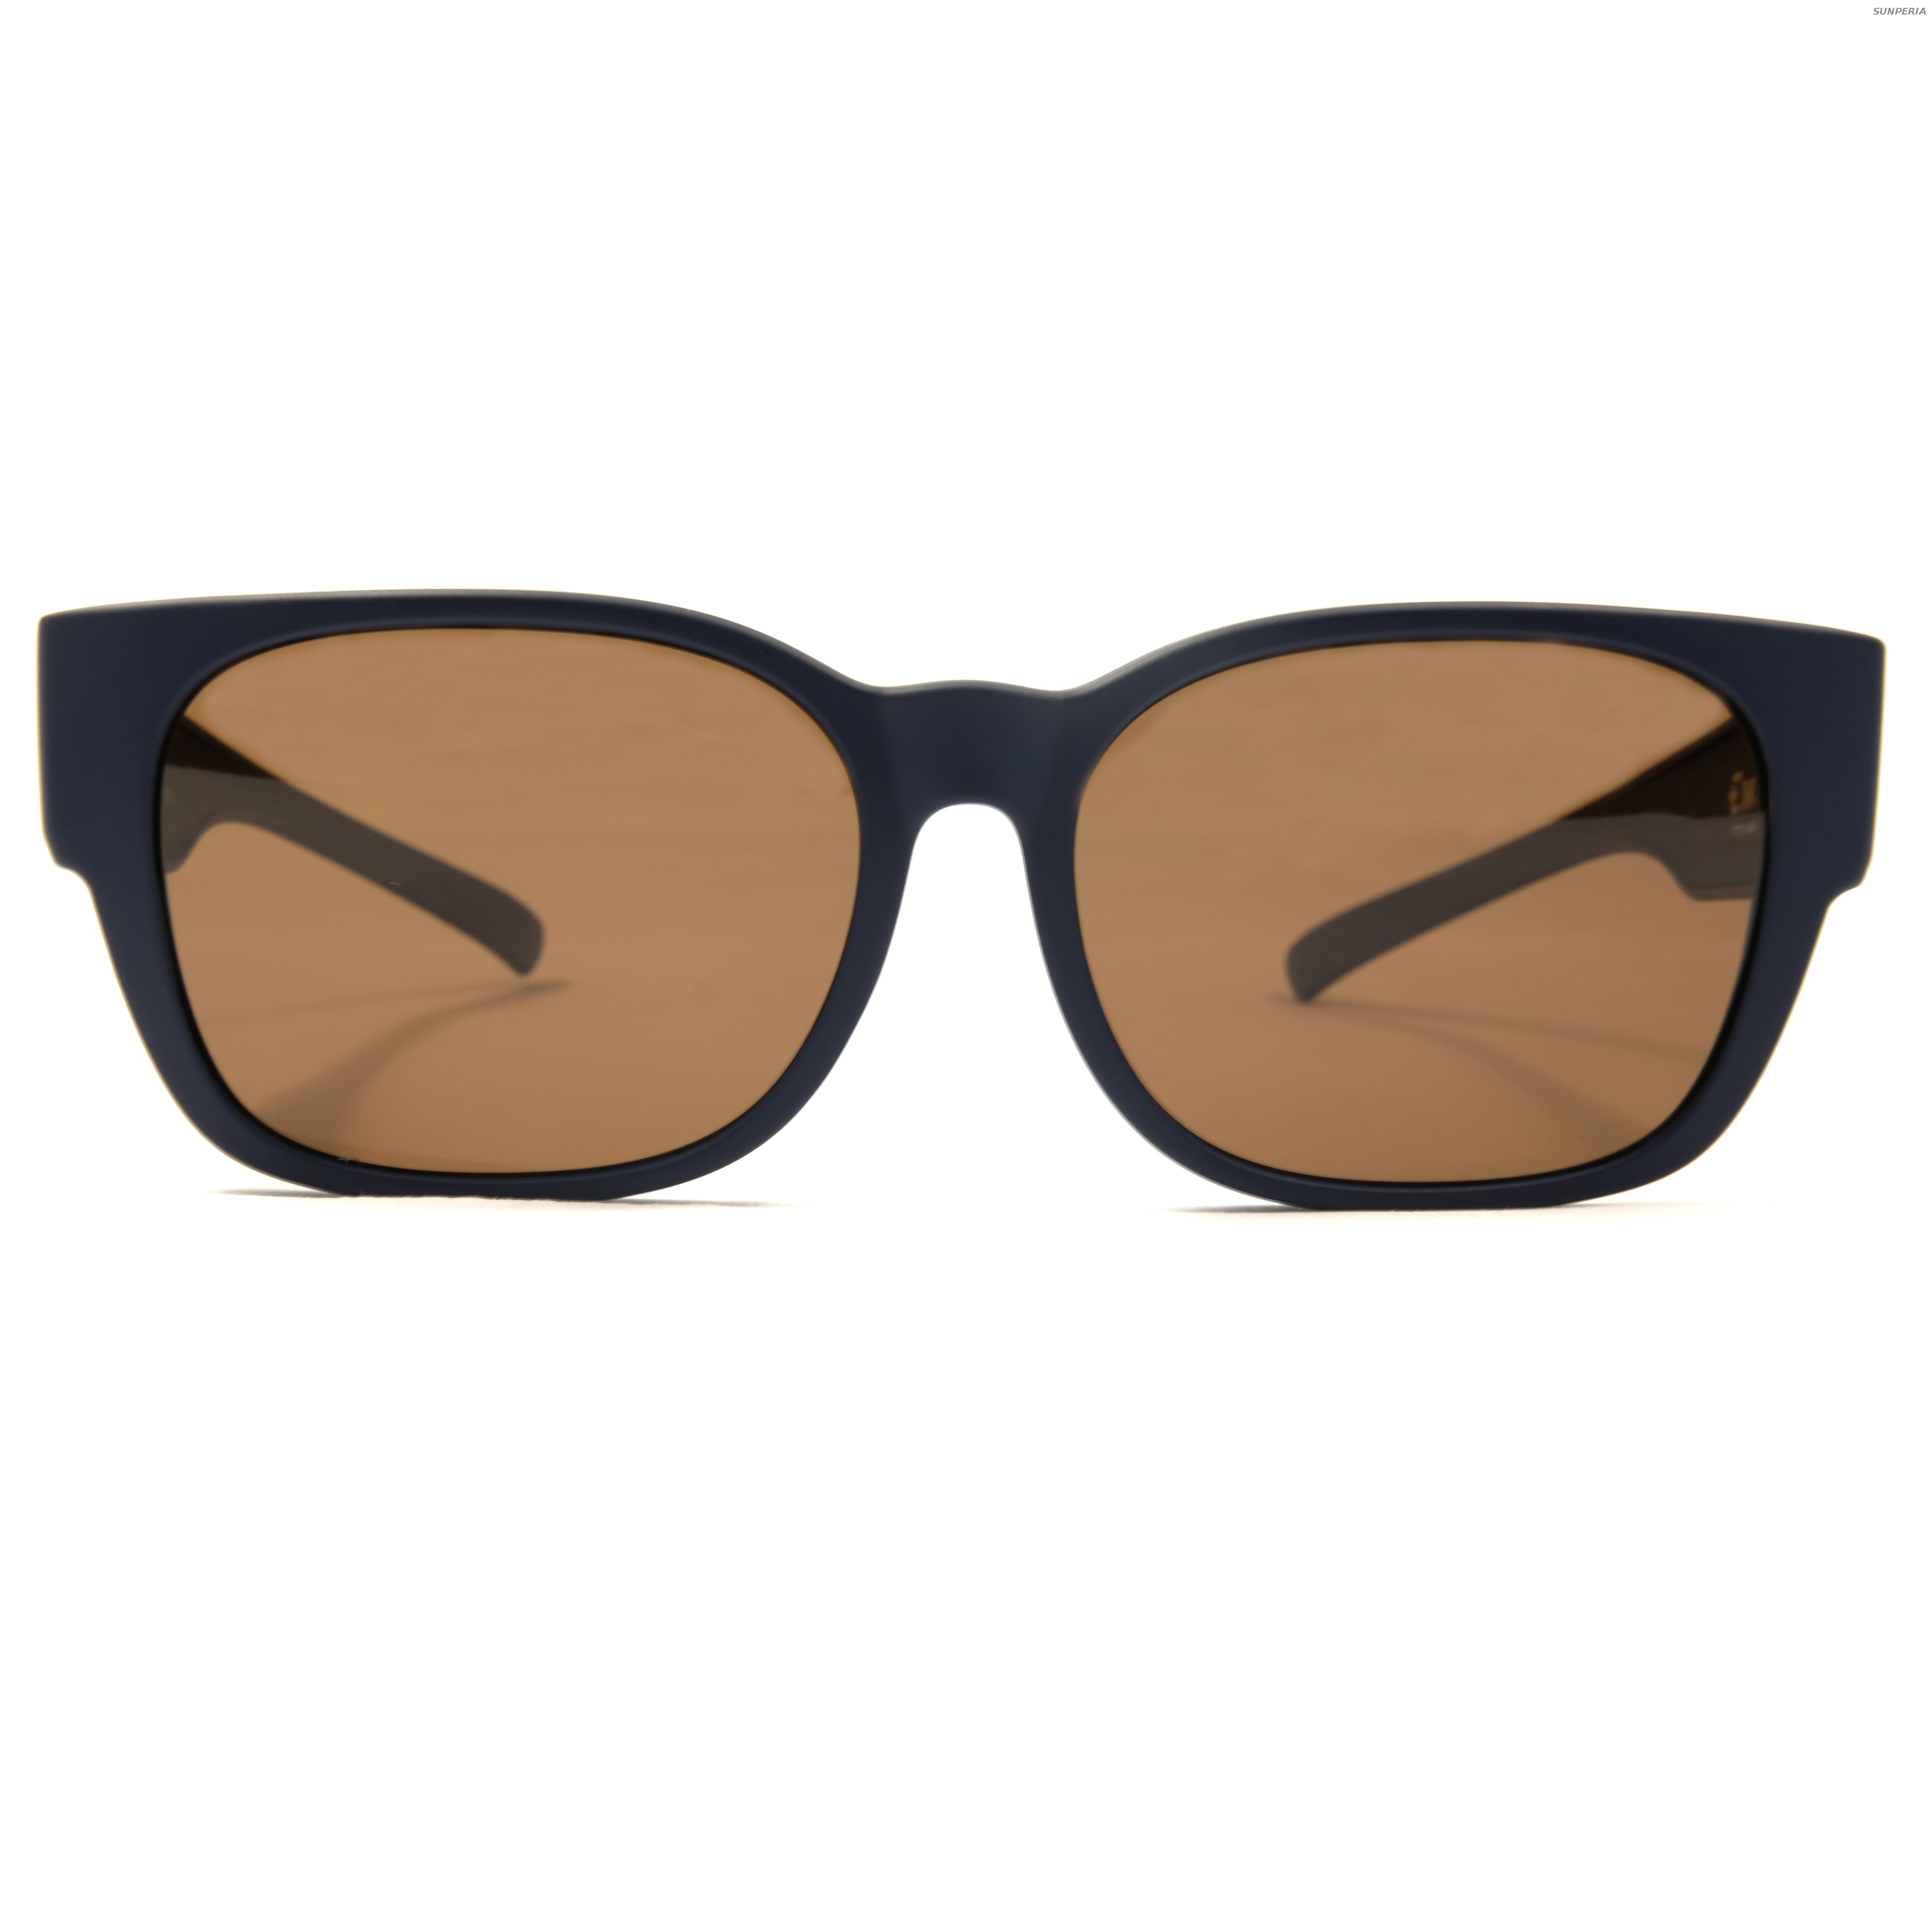 Fit over Gafas de sol Polarizadas Fitover Myopia Gafas de sol de moda adecuadas Proveedores mayoristas Fabricante de gafas más grande